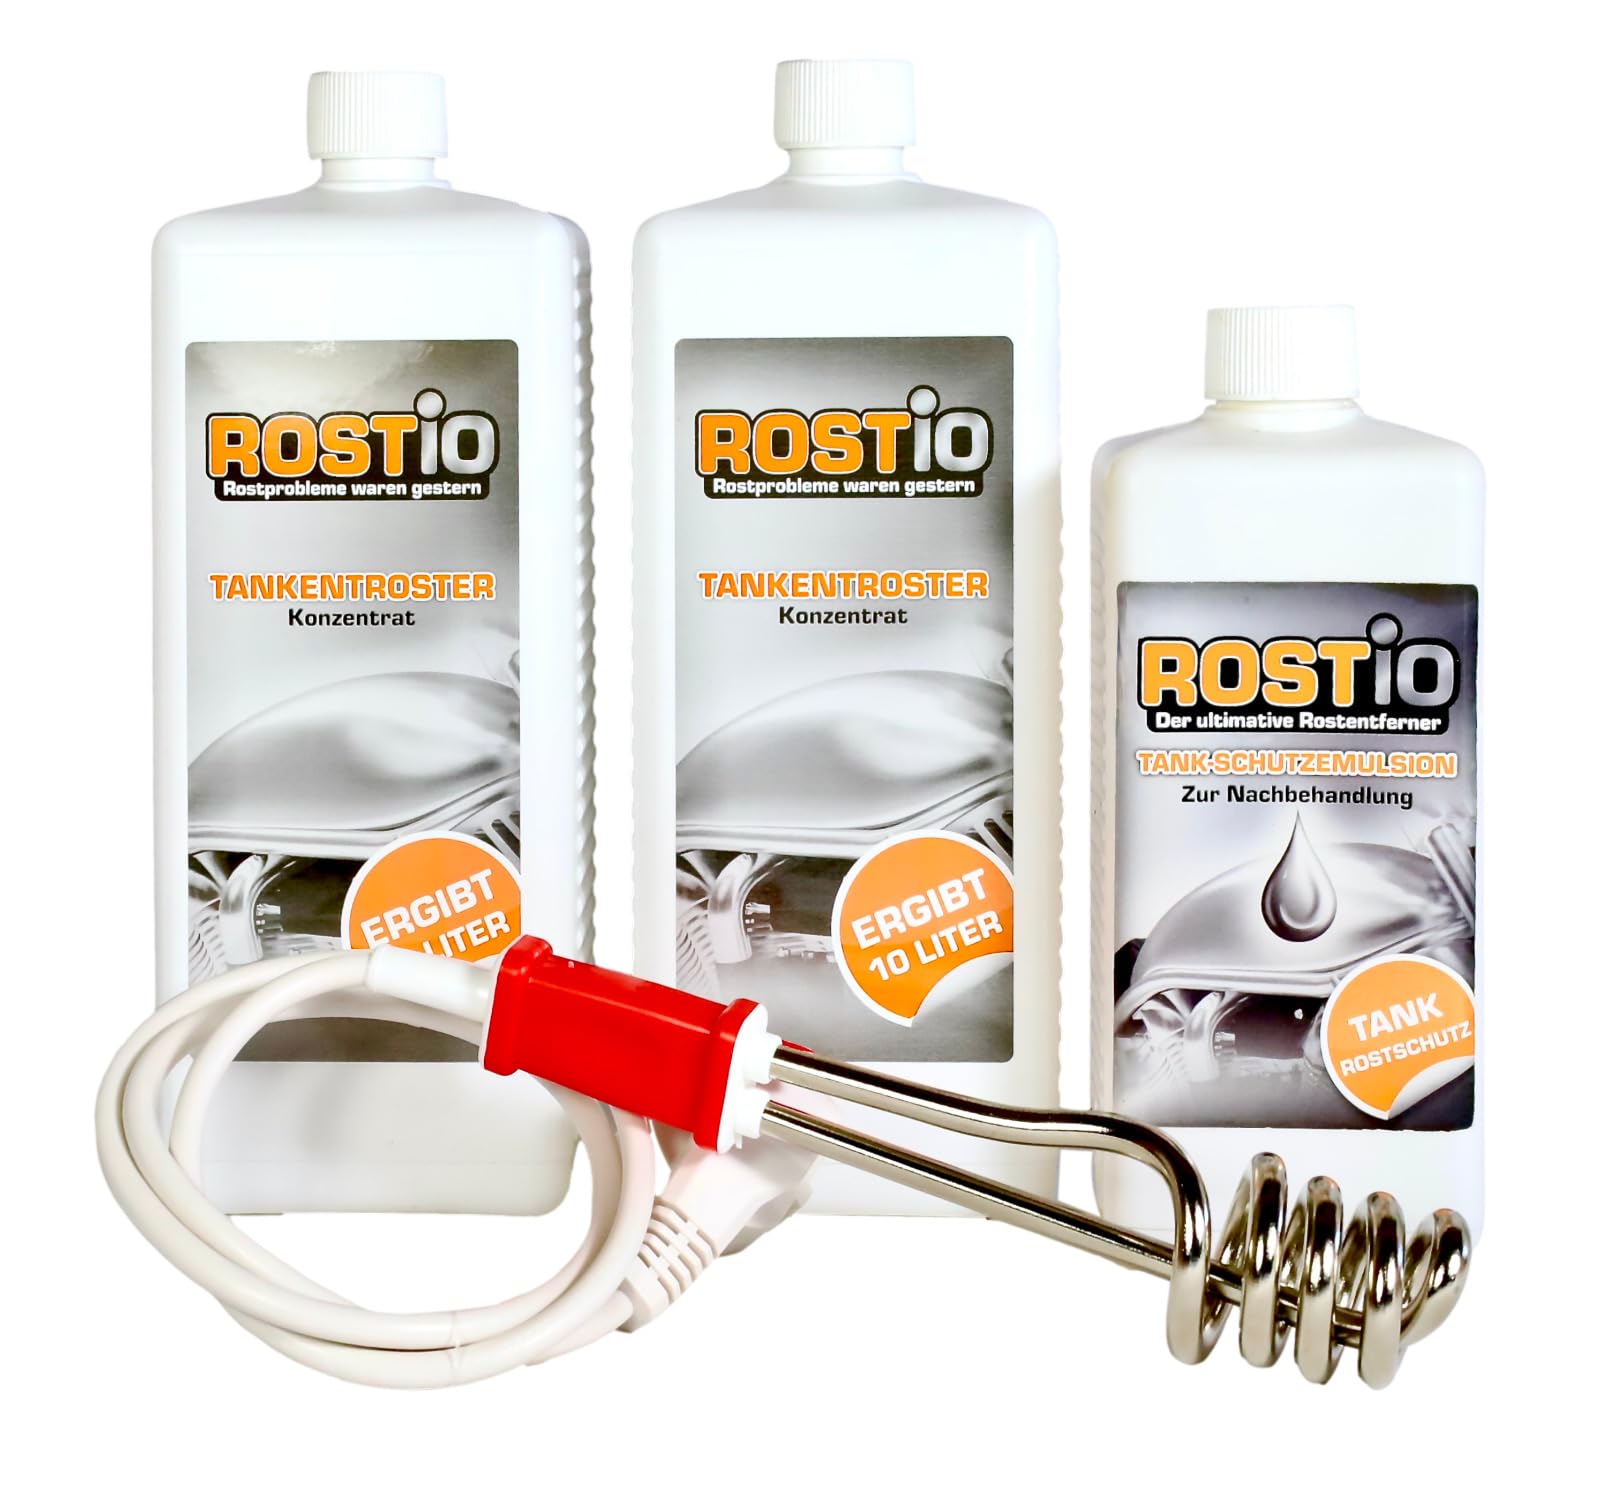 Rostio 2 Liter Tankentroster Plus 500ml Tank-Schutzemulsion Plus Tauchsieder von Rostio